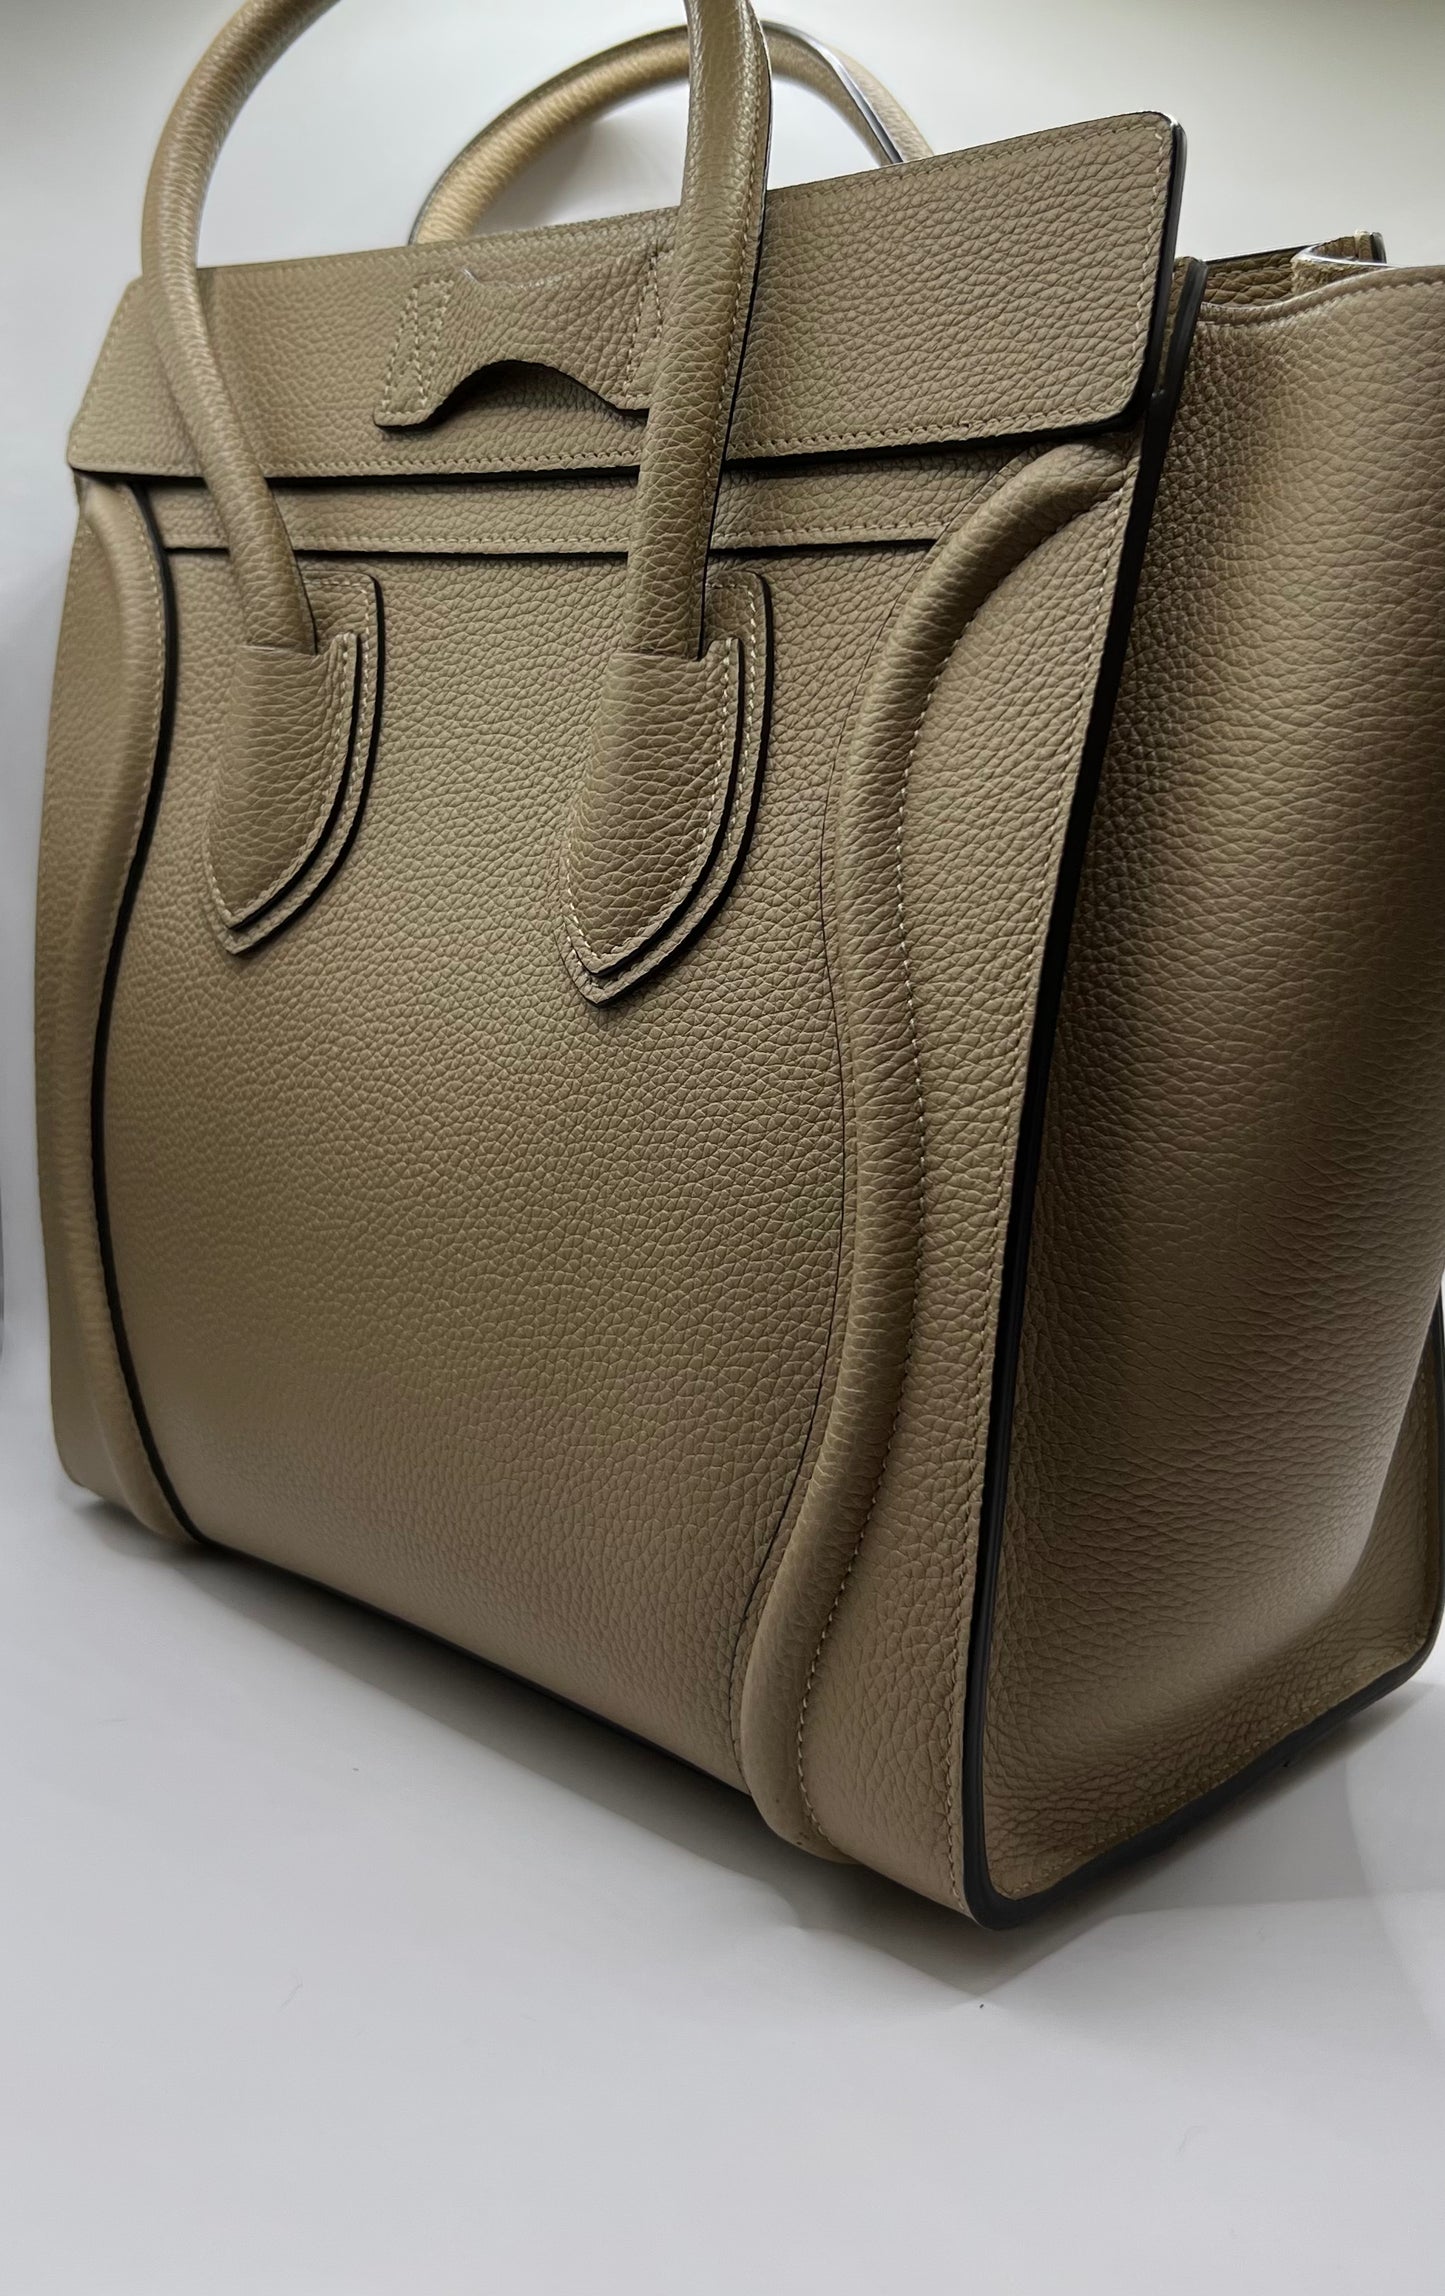 Celine luggage handbag